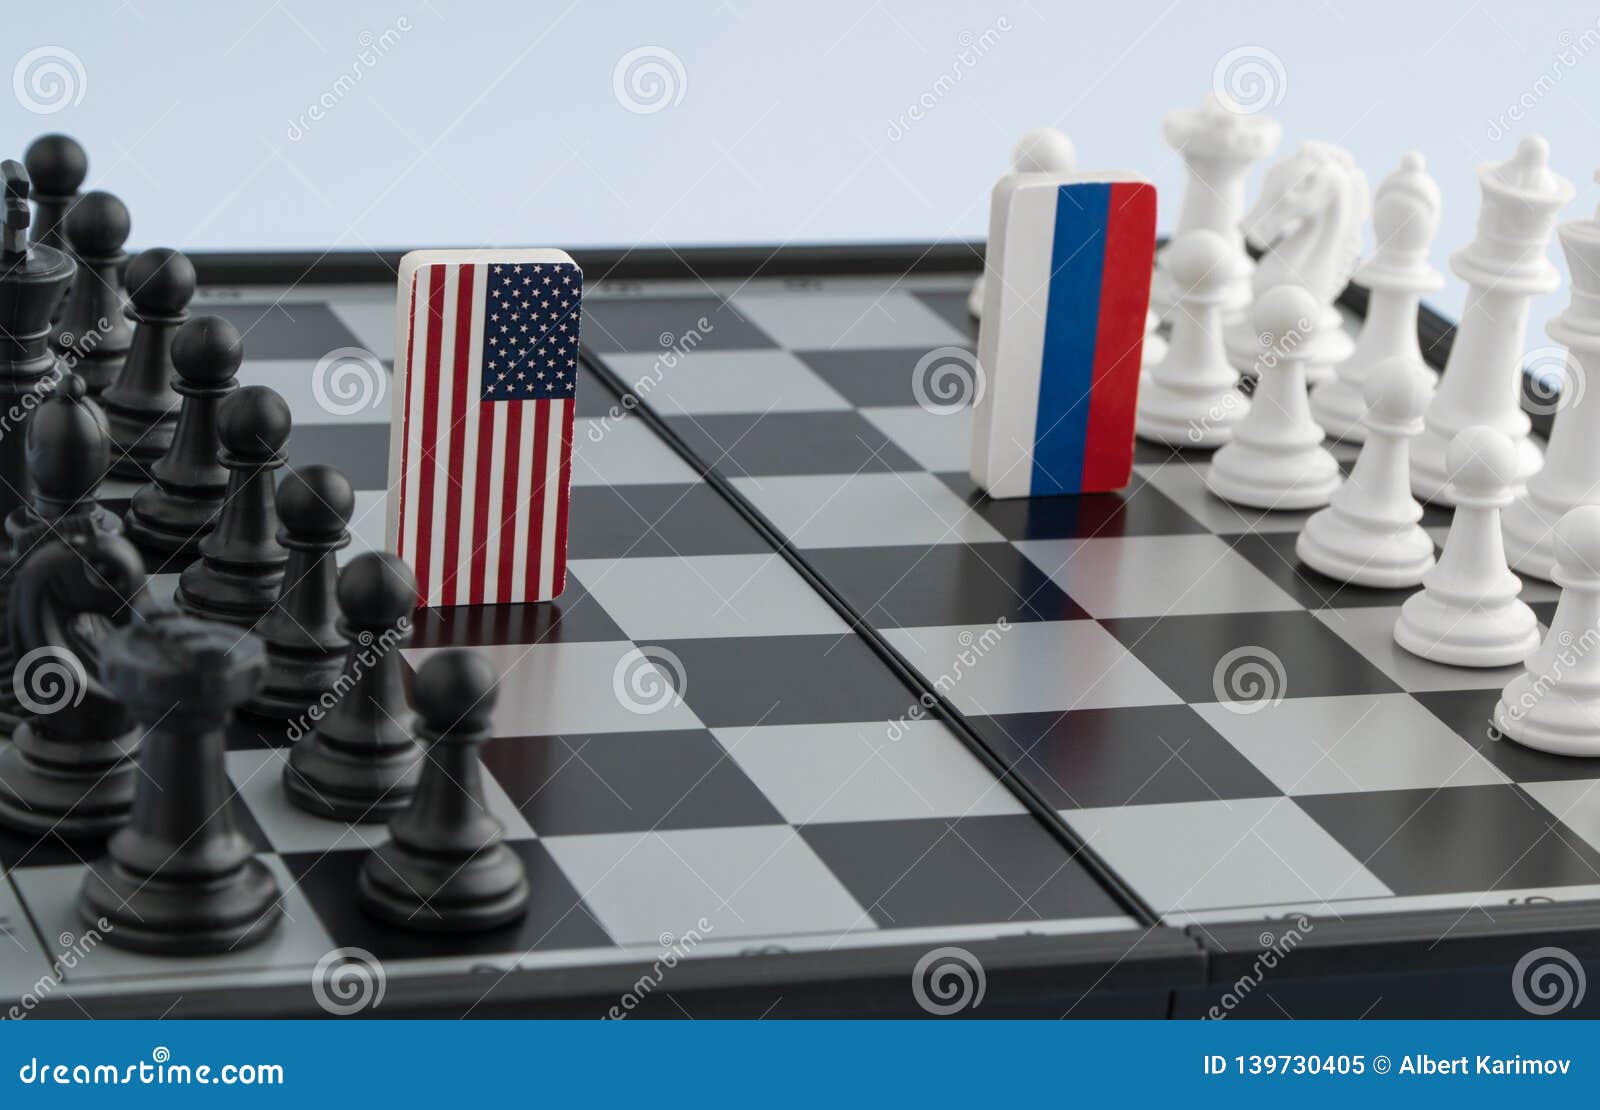 Inglaterra jogando xadrez contra os estados unidos : r/HUEstation